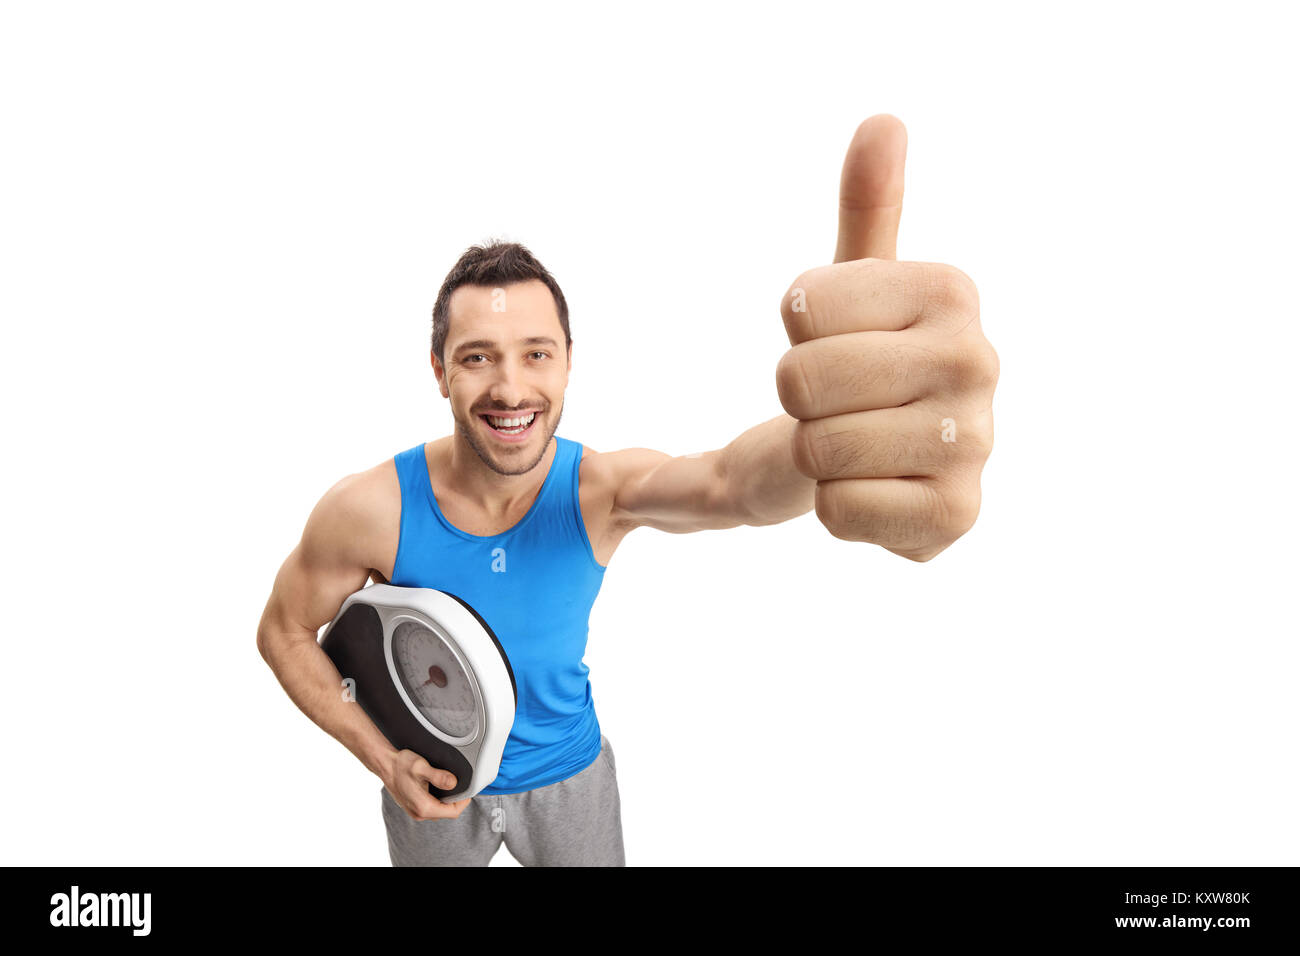 Junge Mann in Sportkleidung Holding eine Waage und ein "Daumen hoch" Geste auf weißem Hintergrund Stockfoto